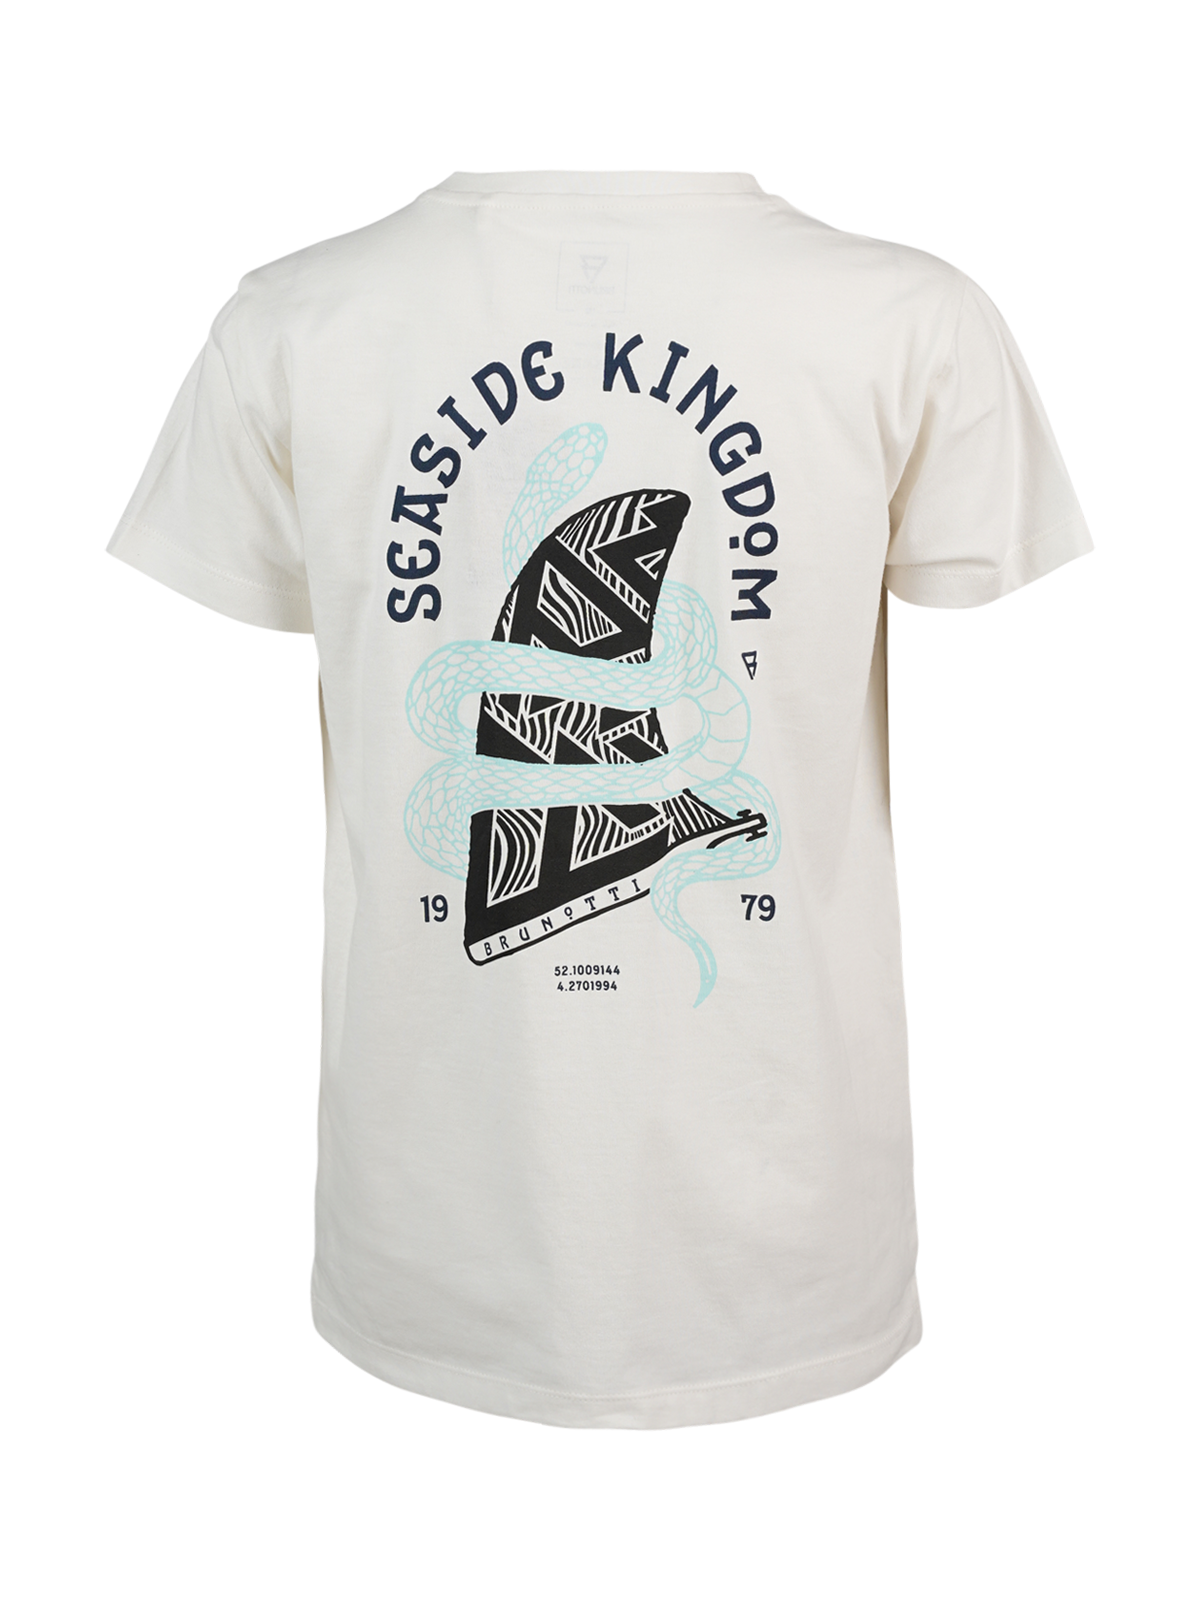 Kingfiny Jungen T-shirt | Off-White